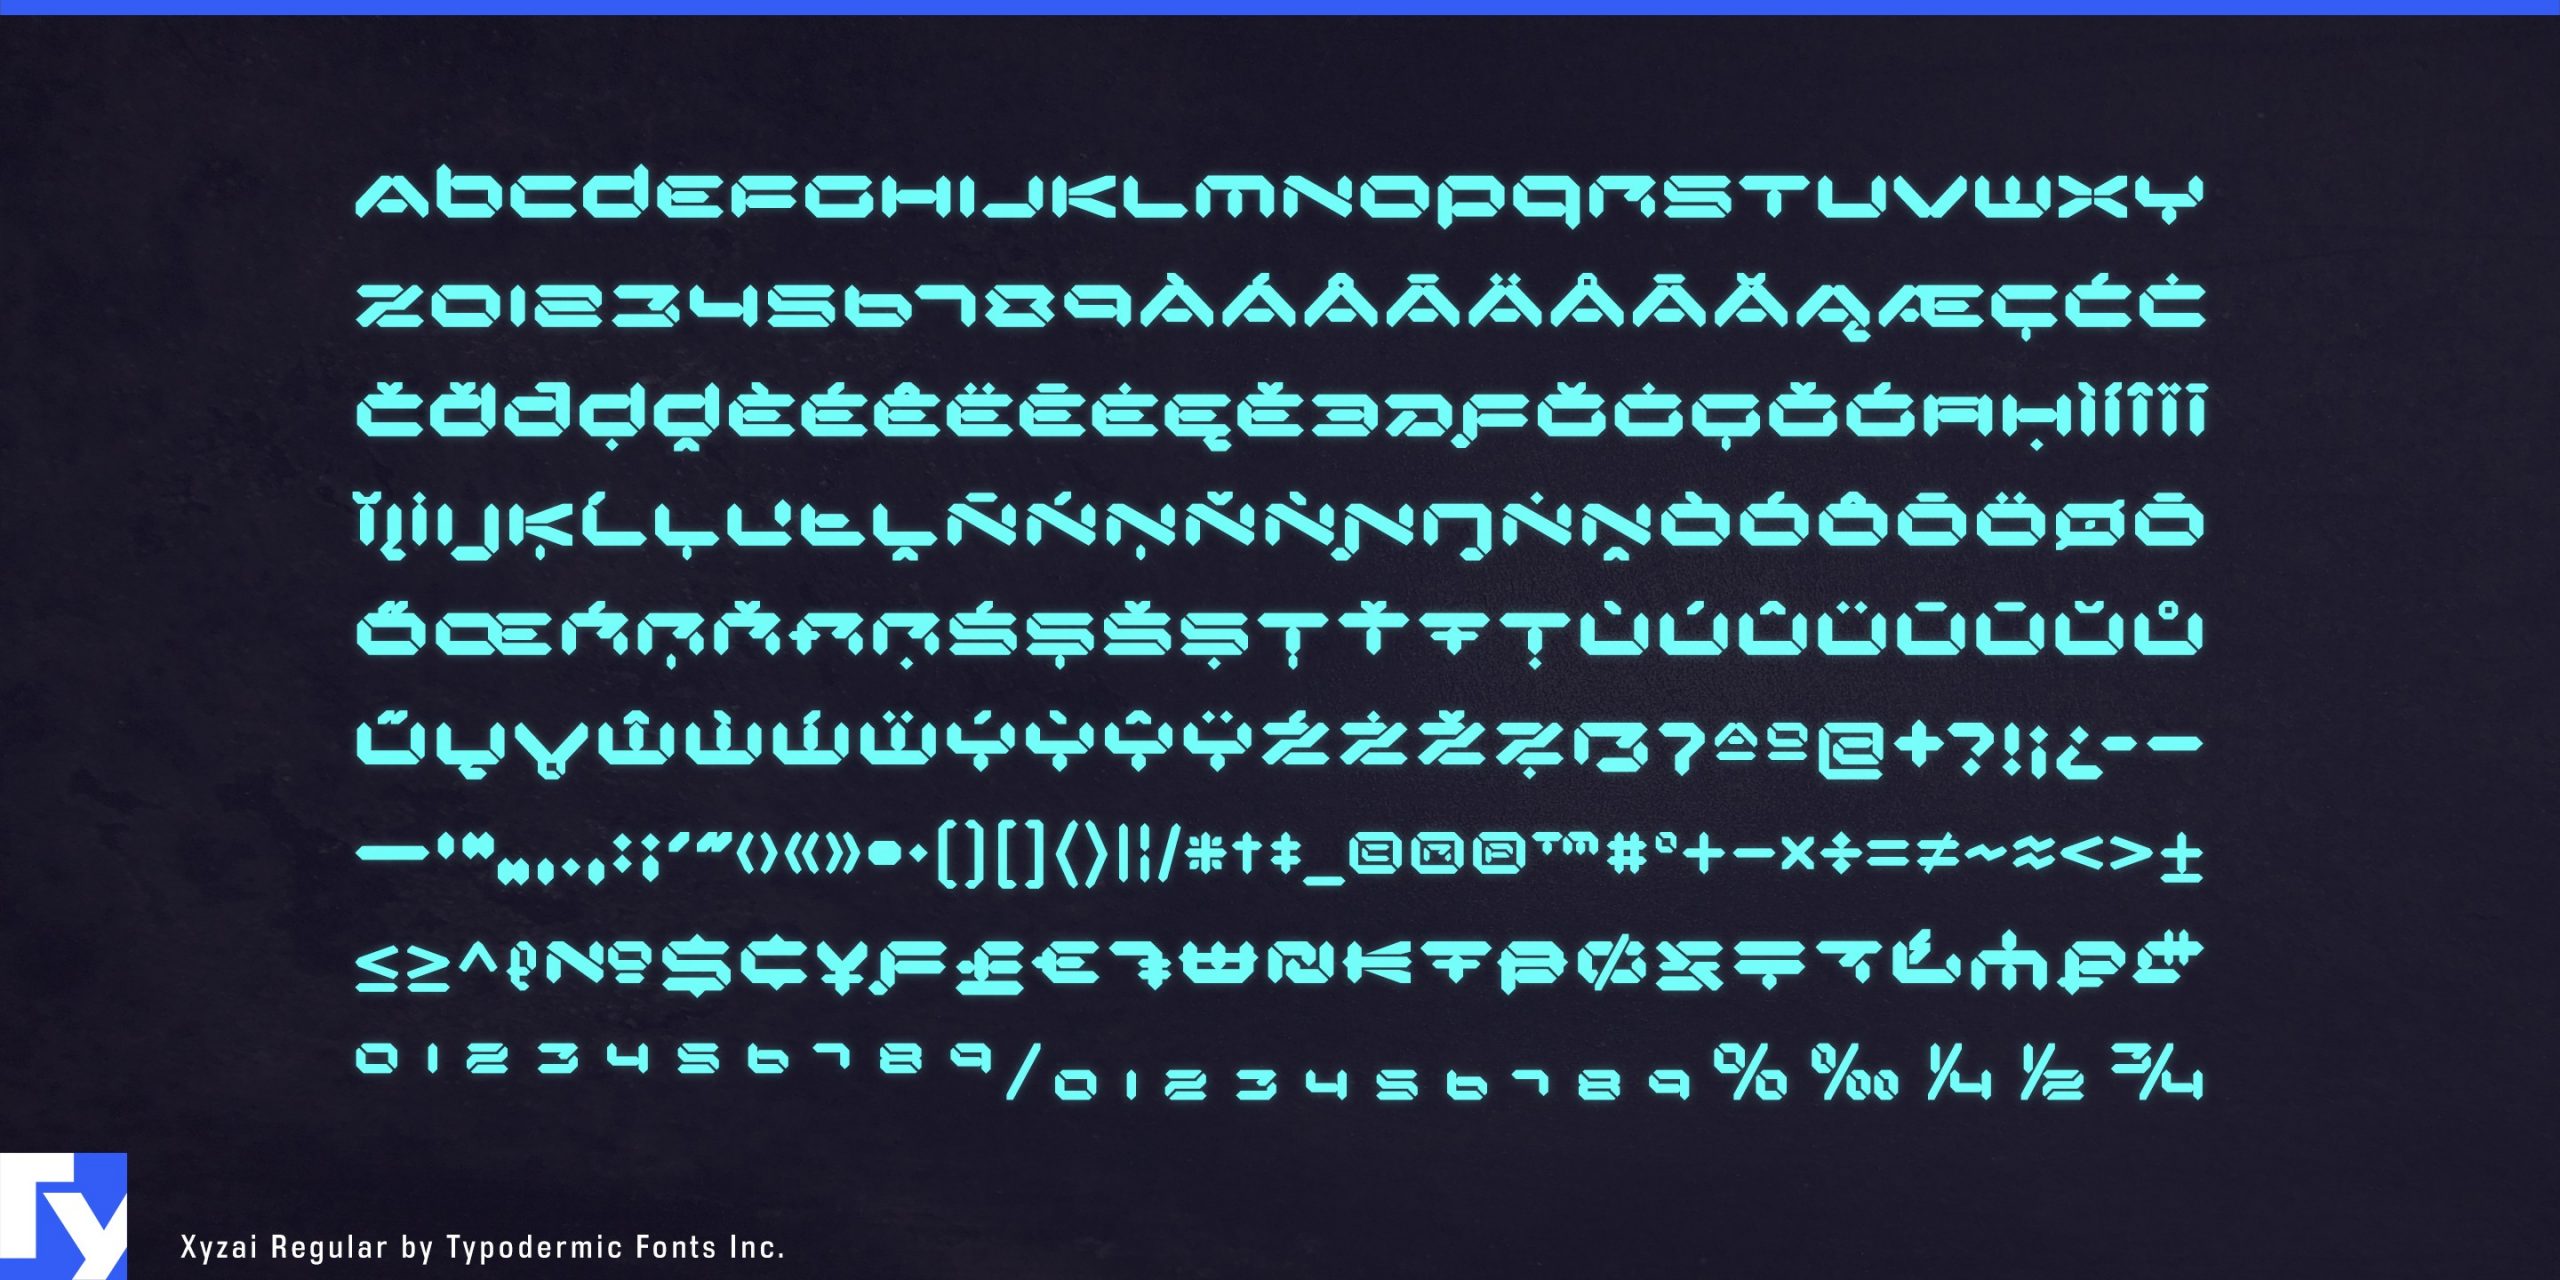 Futuristic Elegance: Xyzai Typeface's LED-Inspired Segments